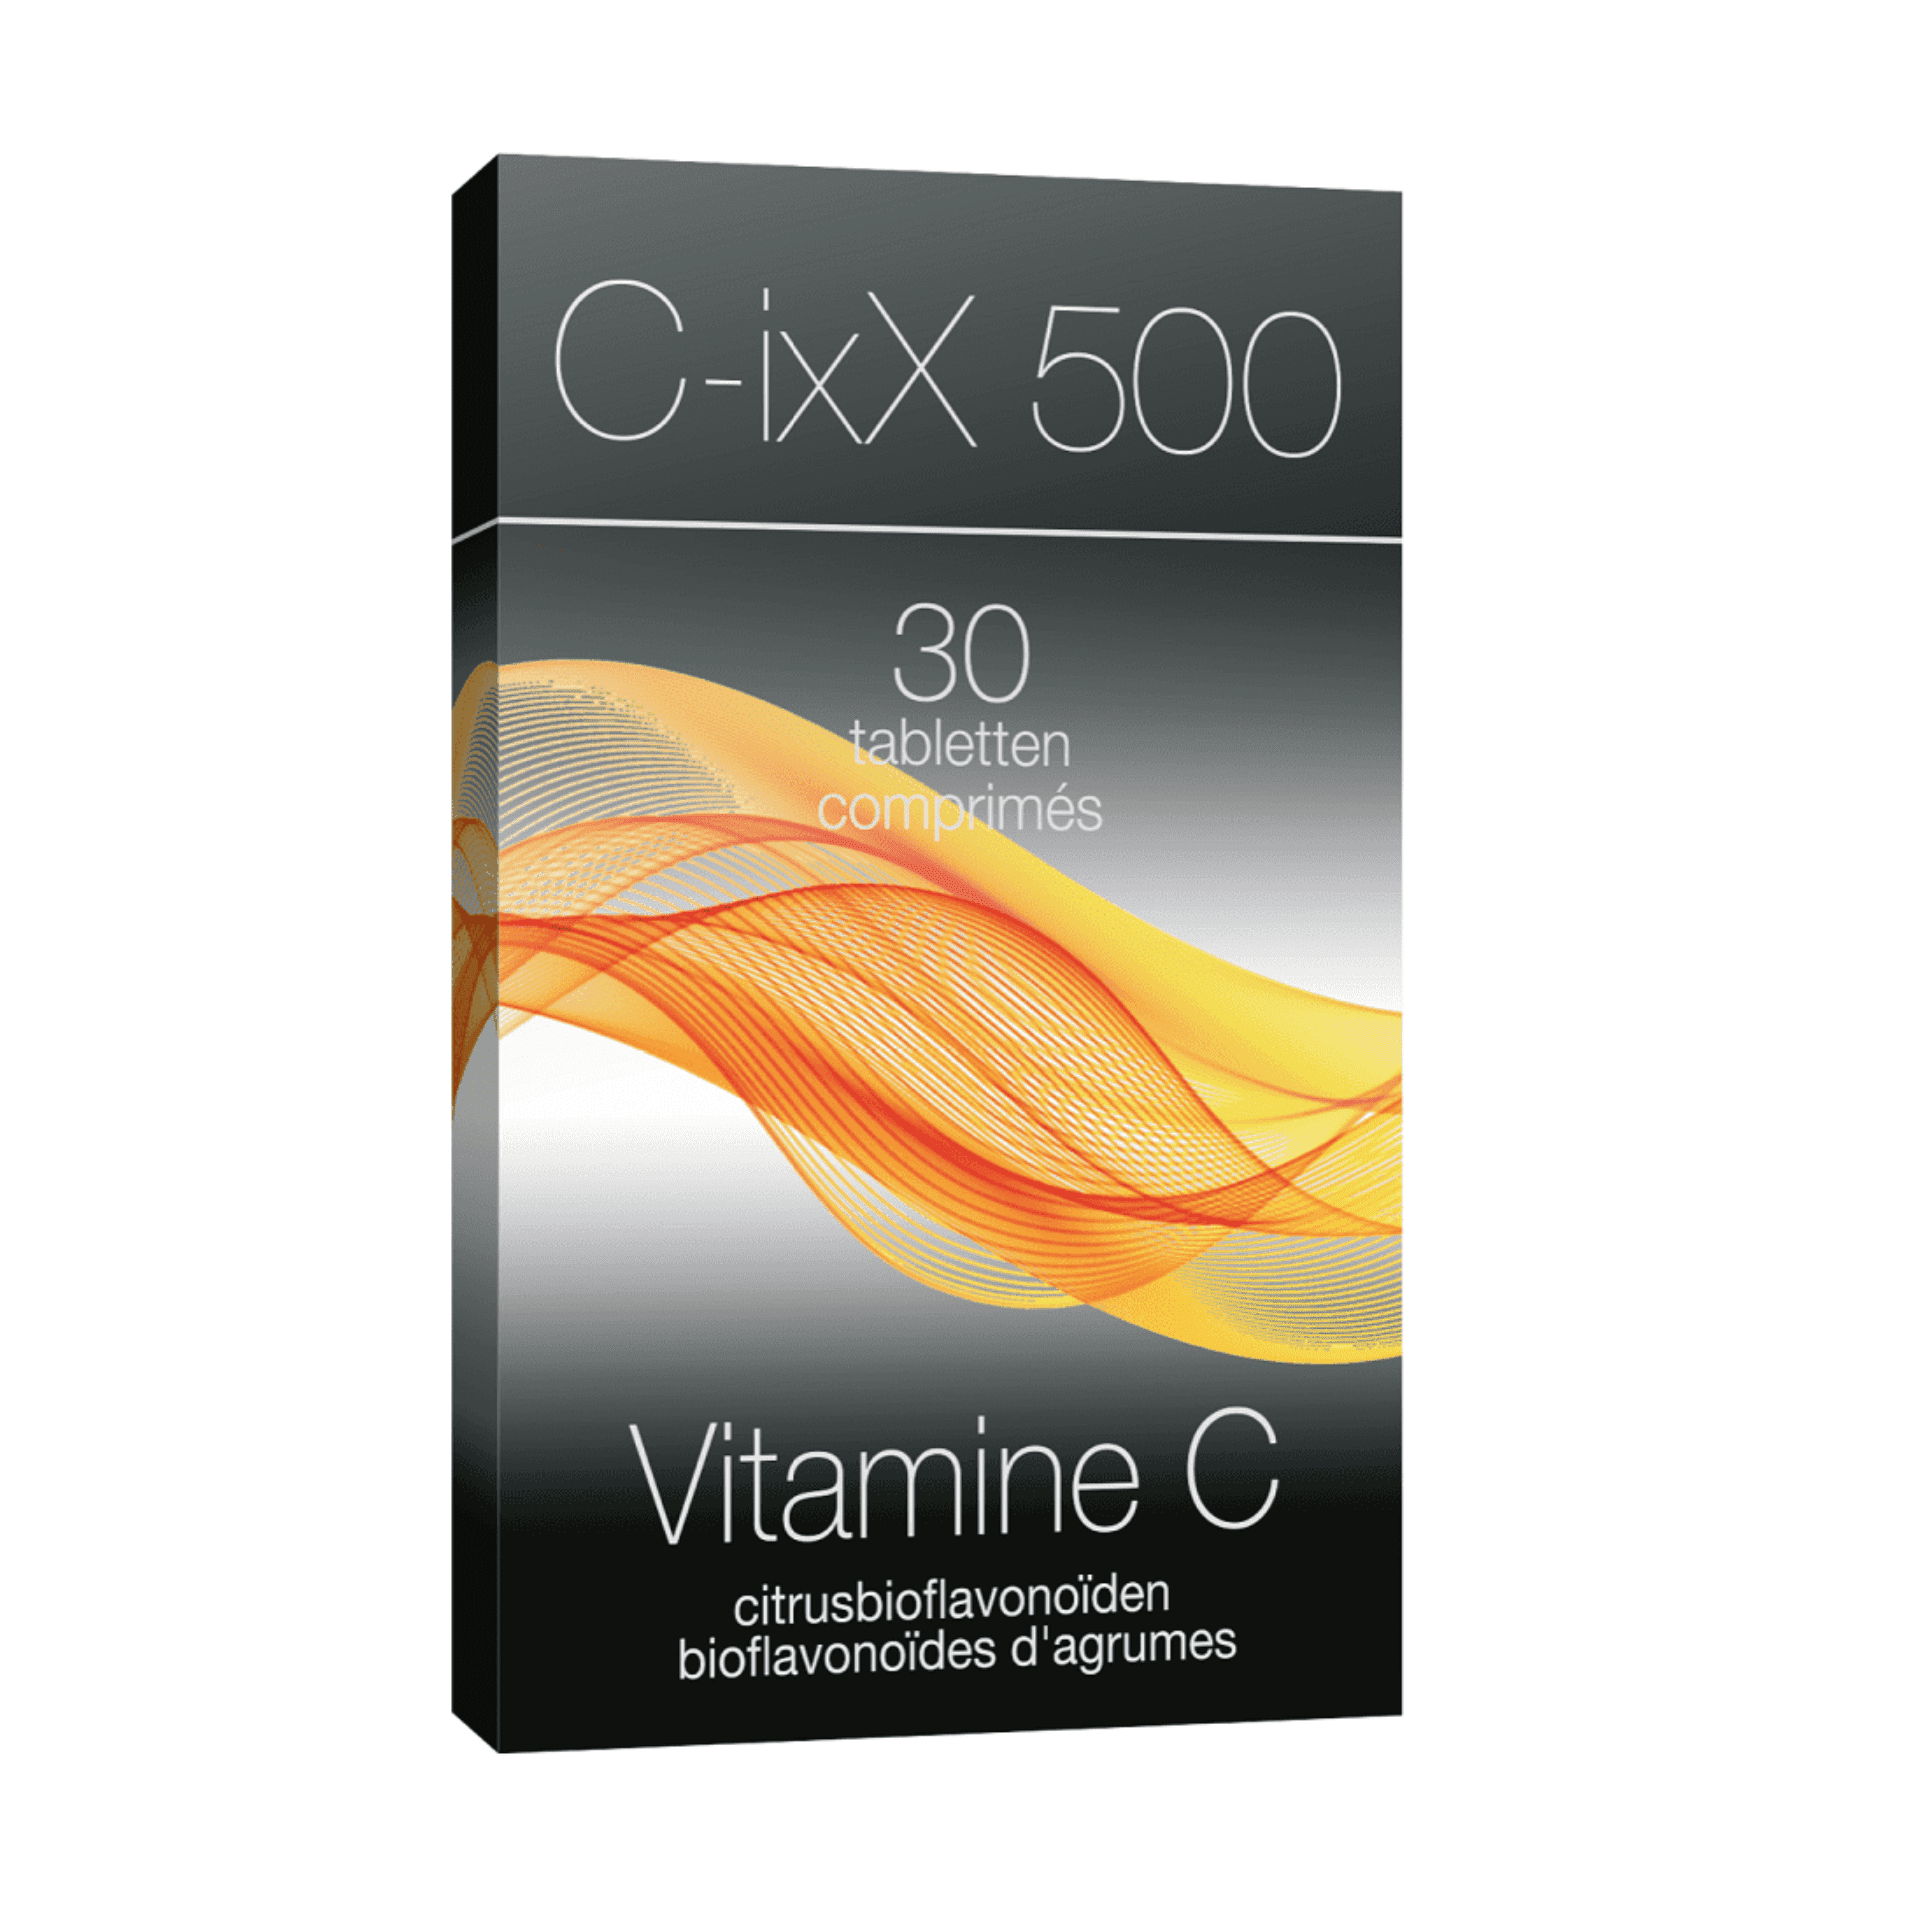 C-ixX 500 30 comprimés